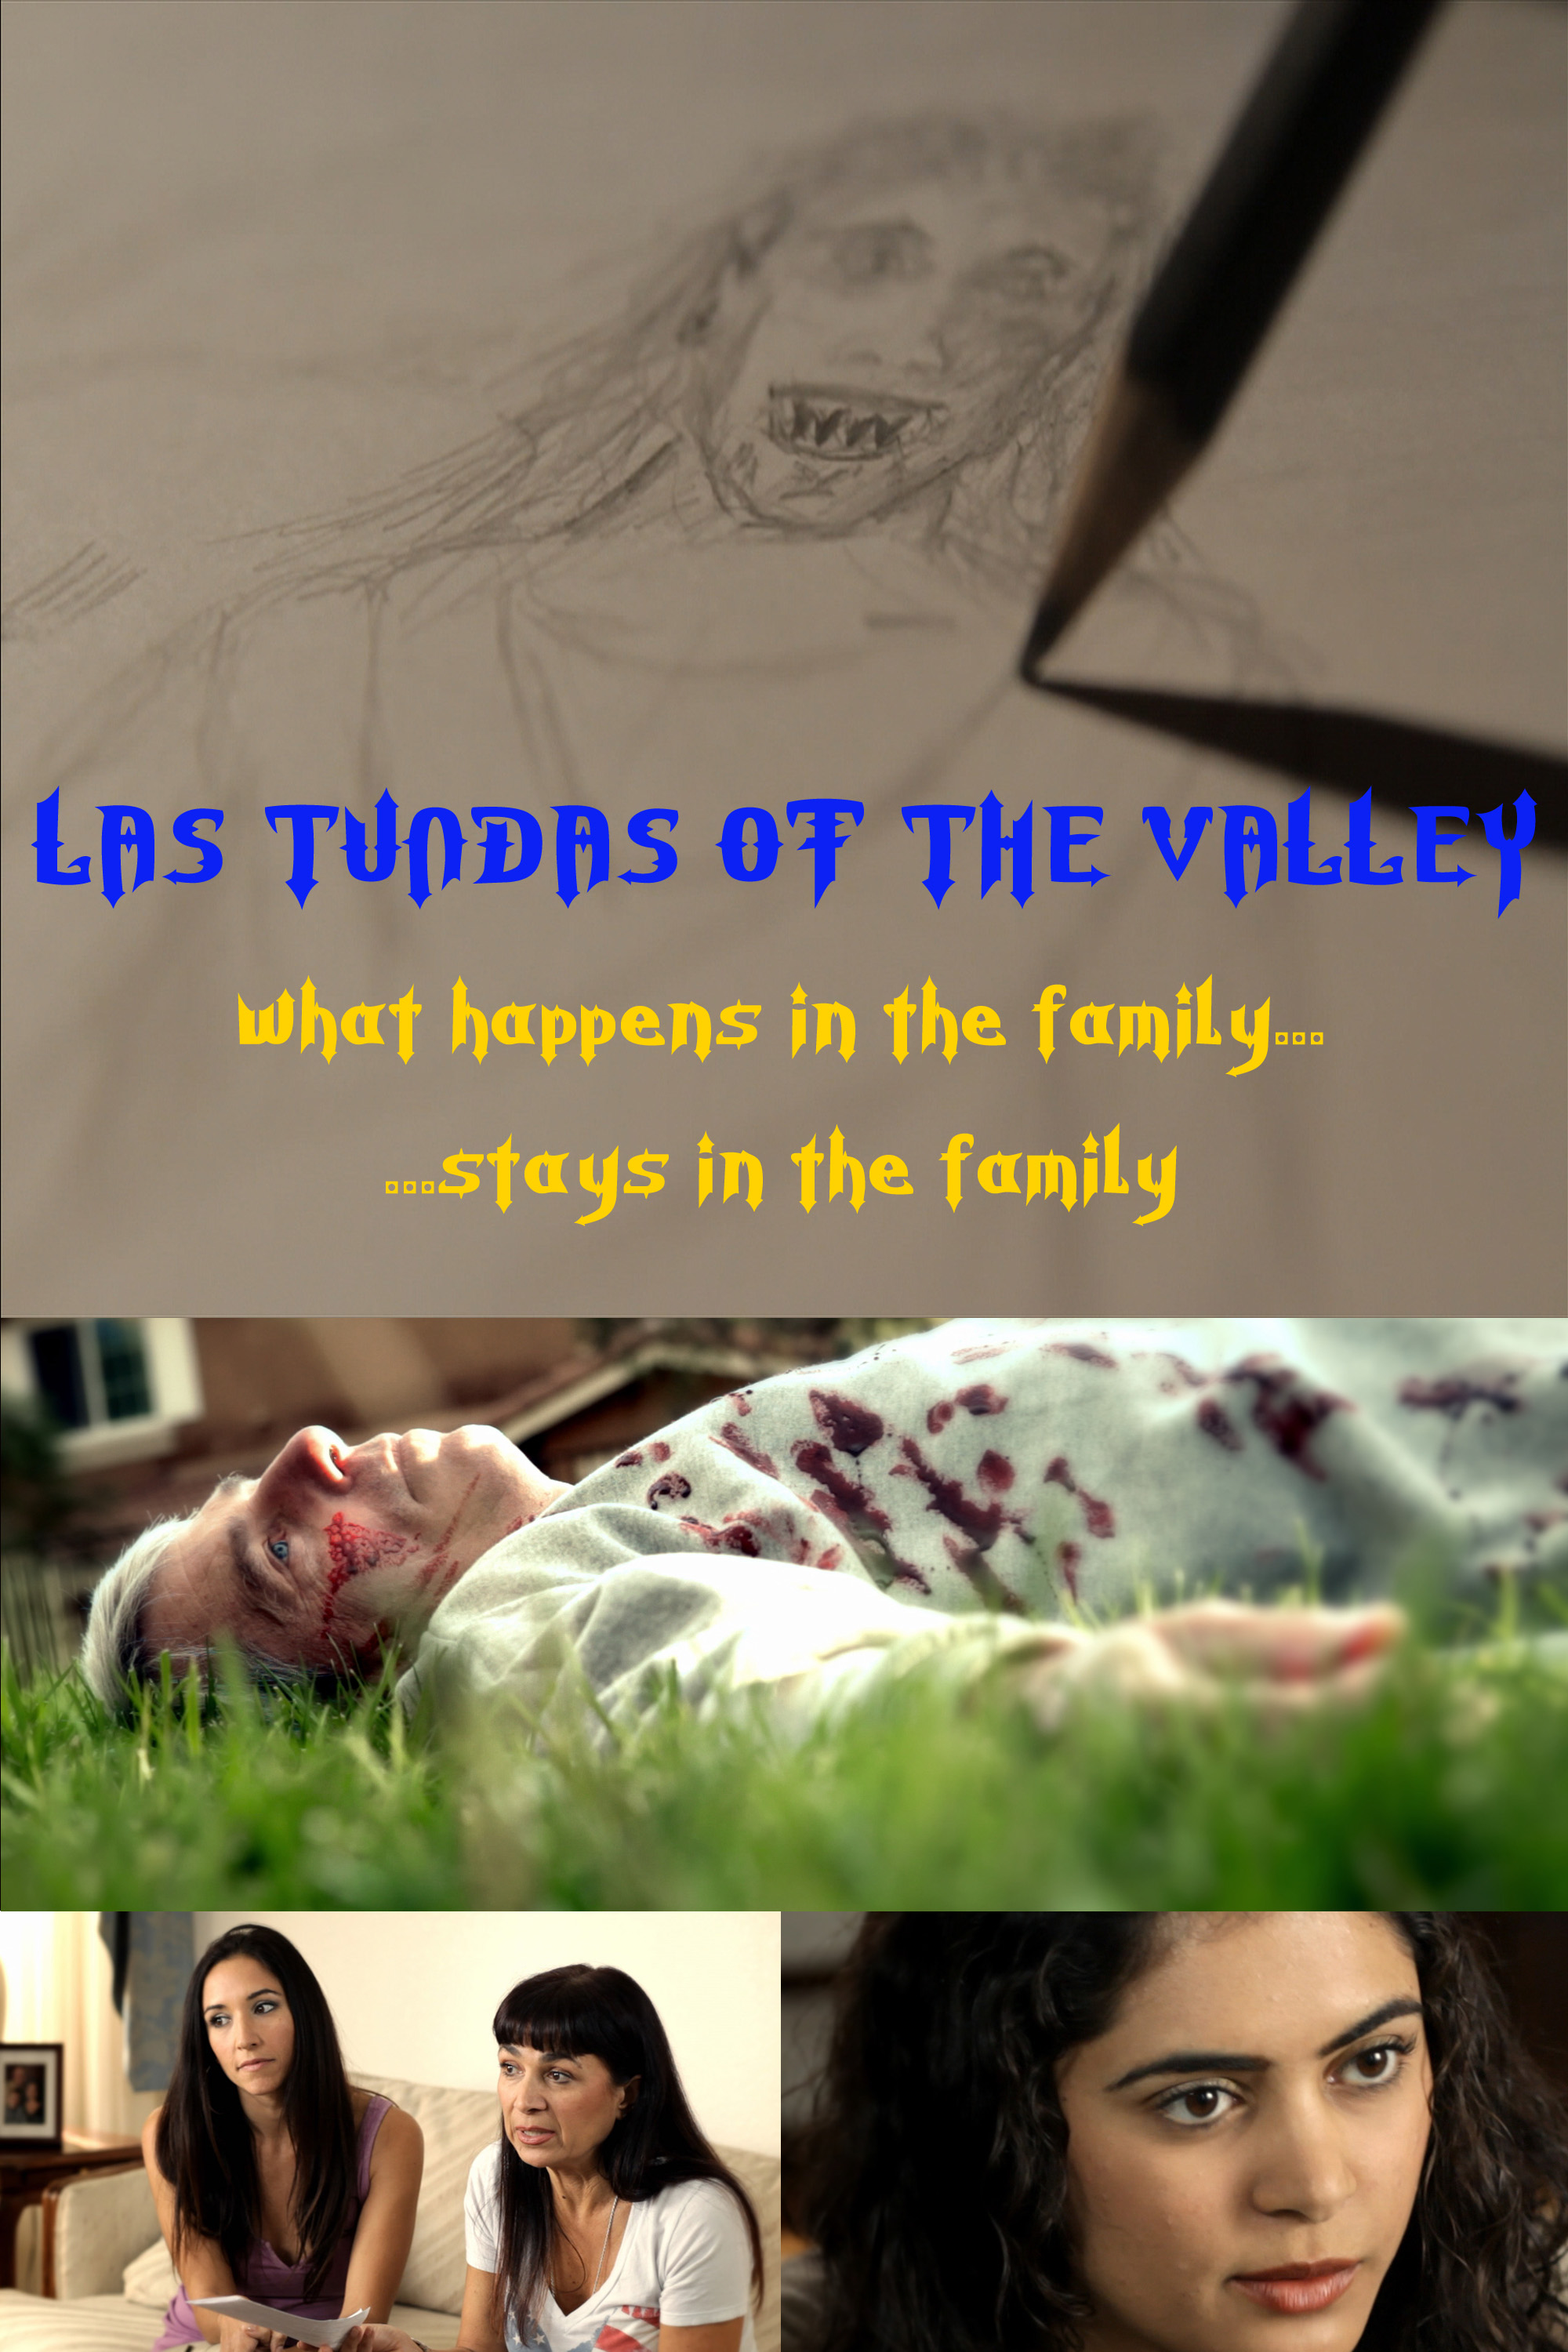 Las Tundas of the Valley